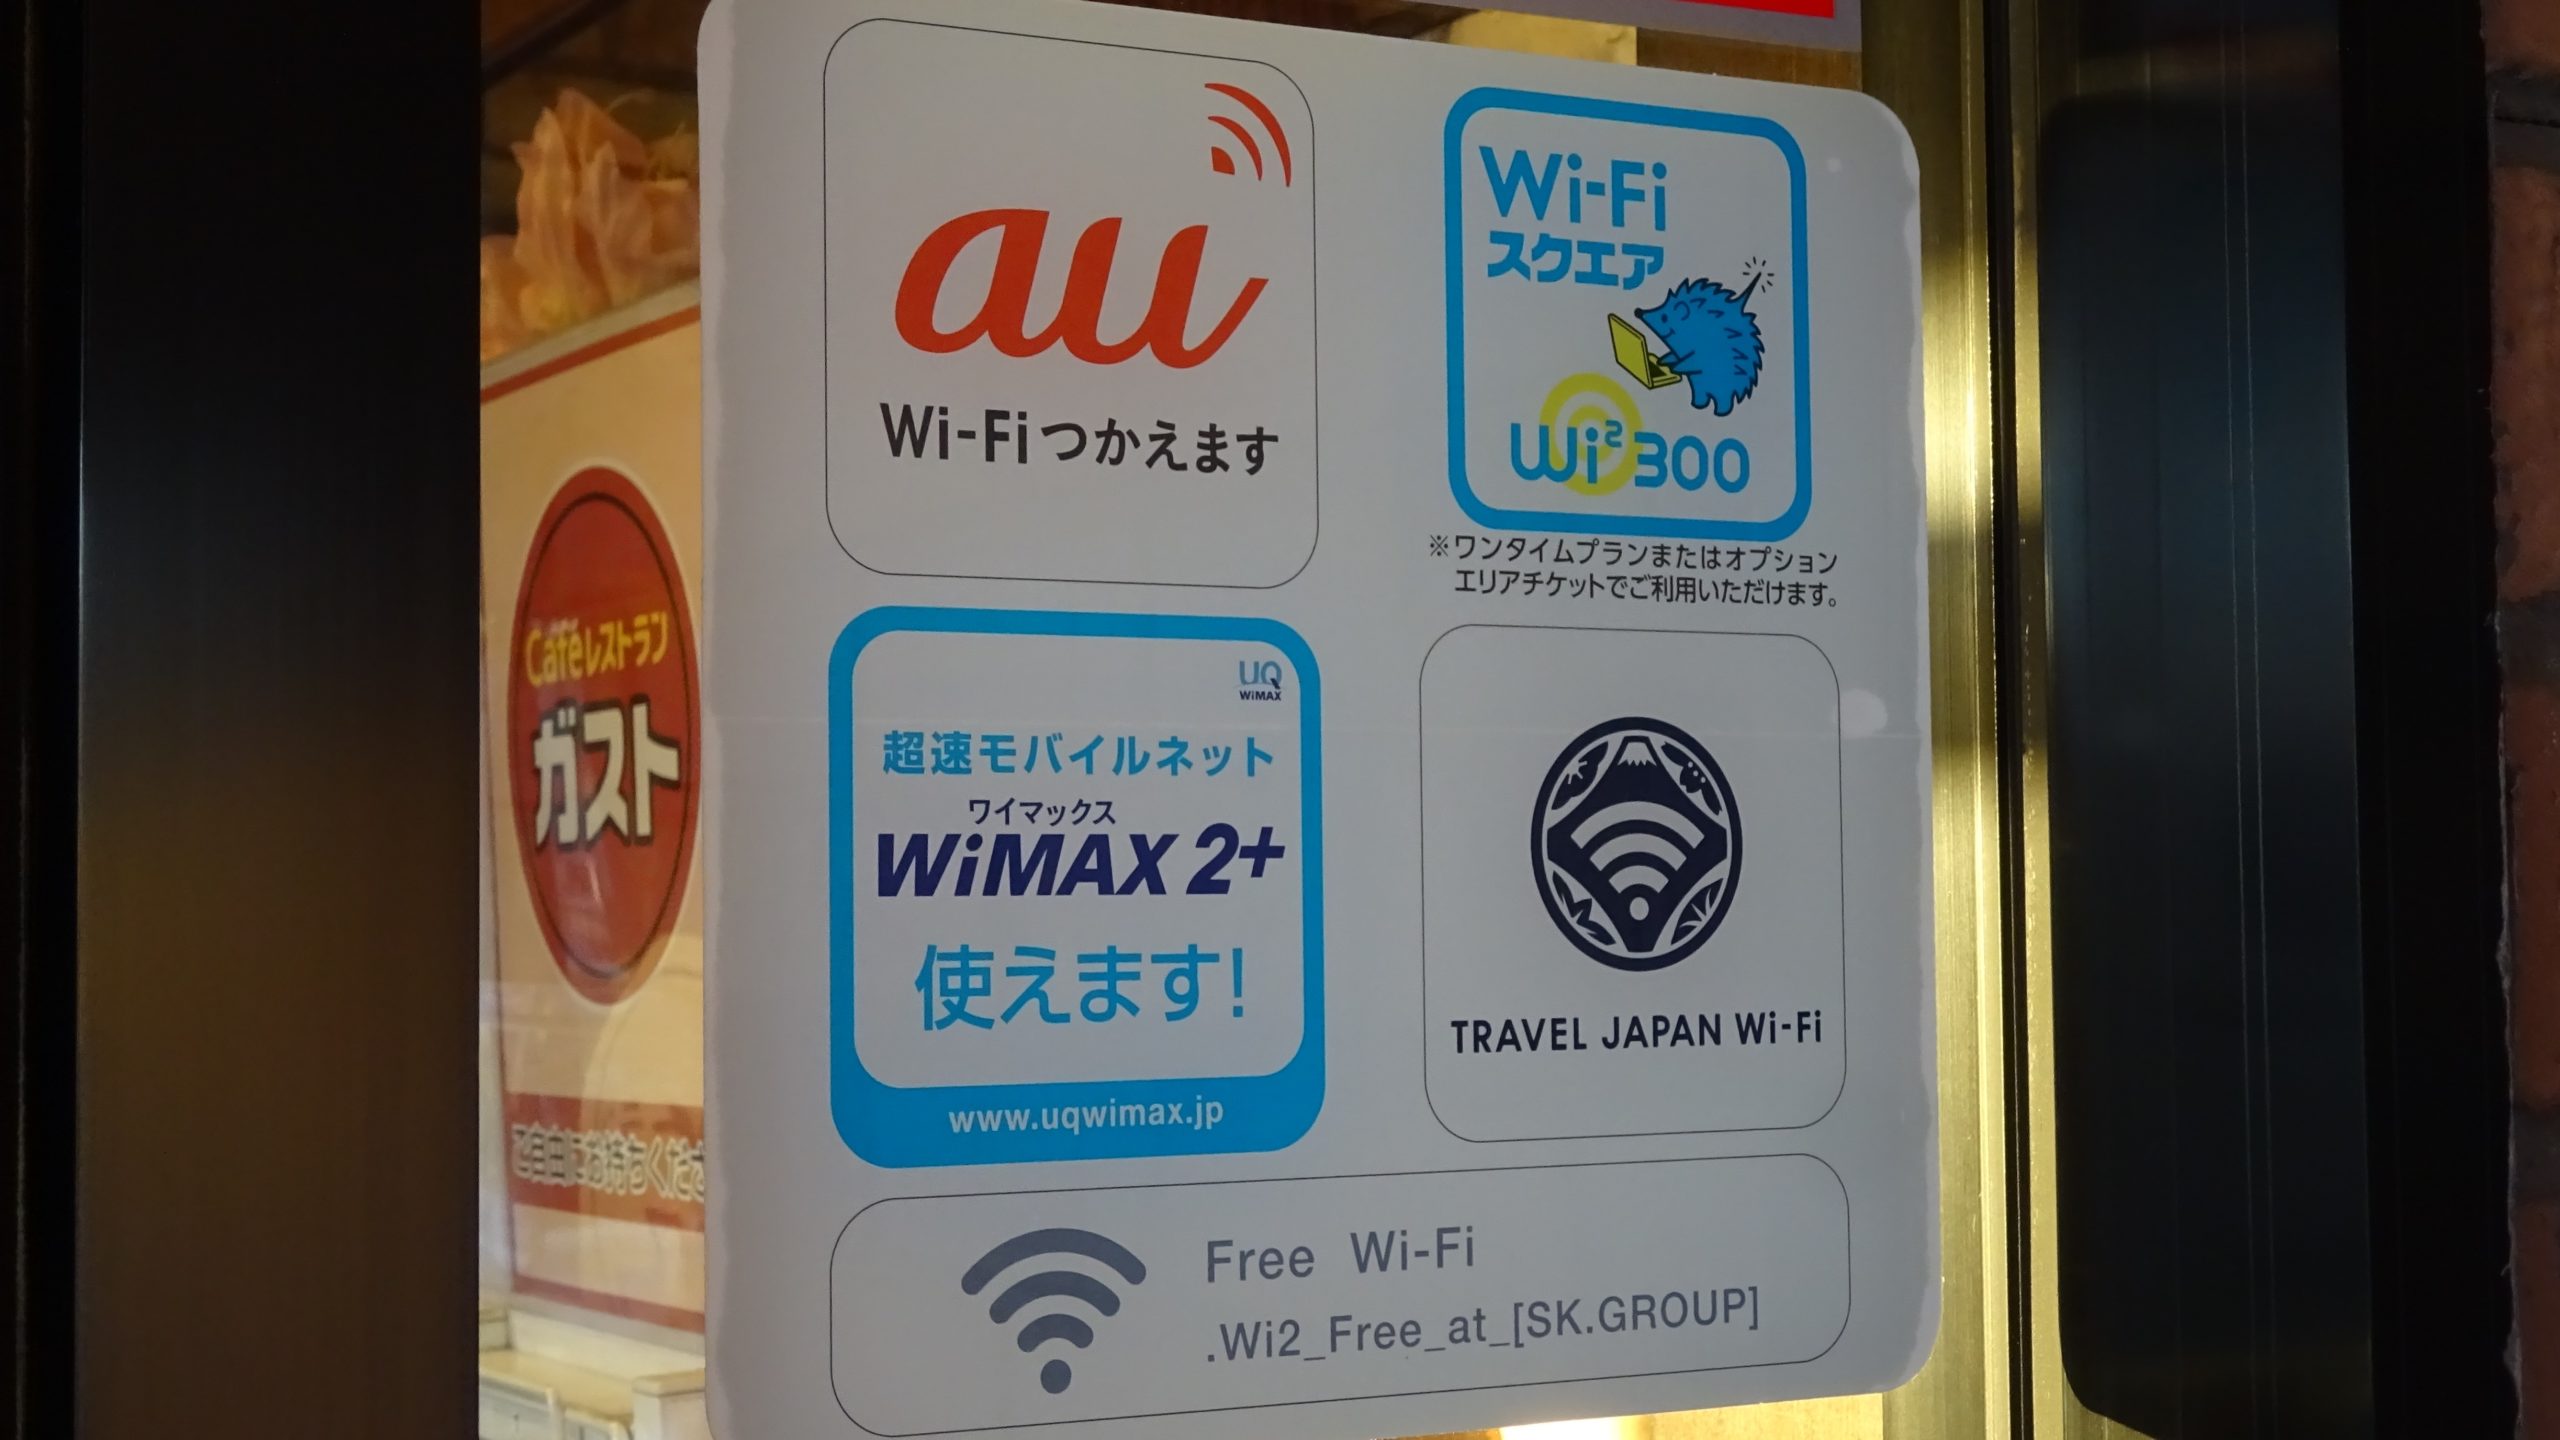 ガストで利用できる無料Wi-Fi「ガストWi-Fi」の設定方法と接続手順